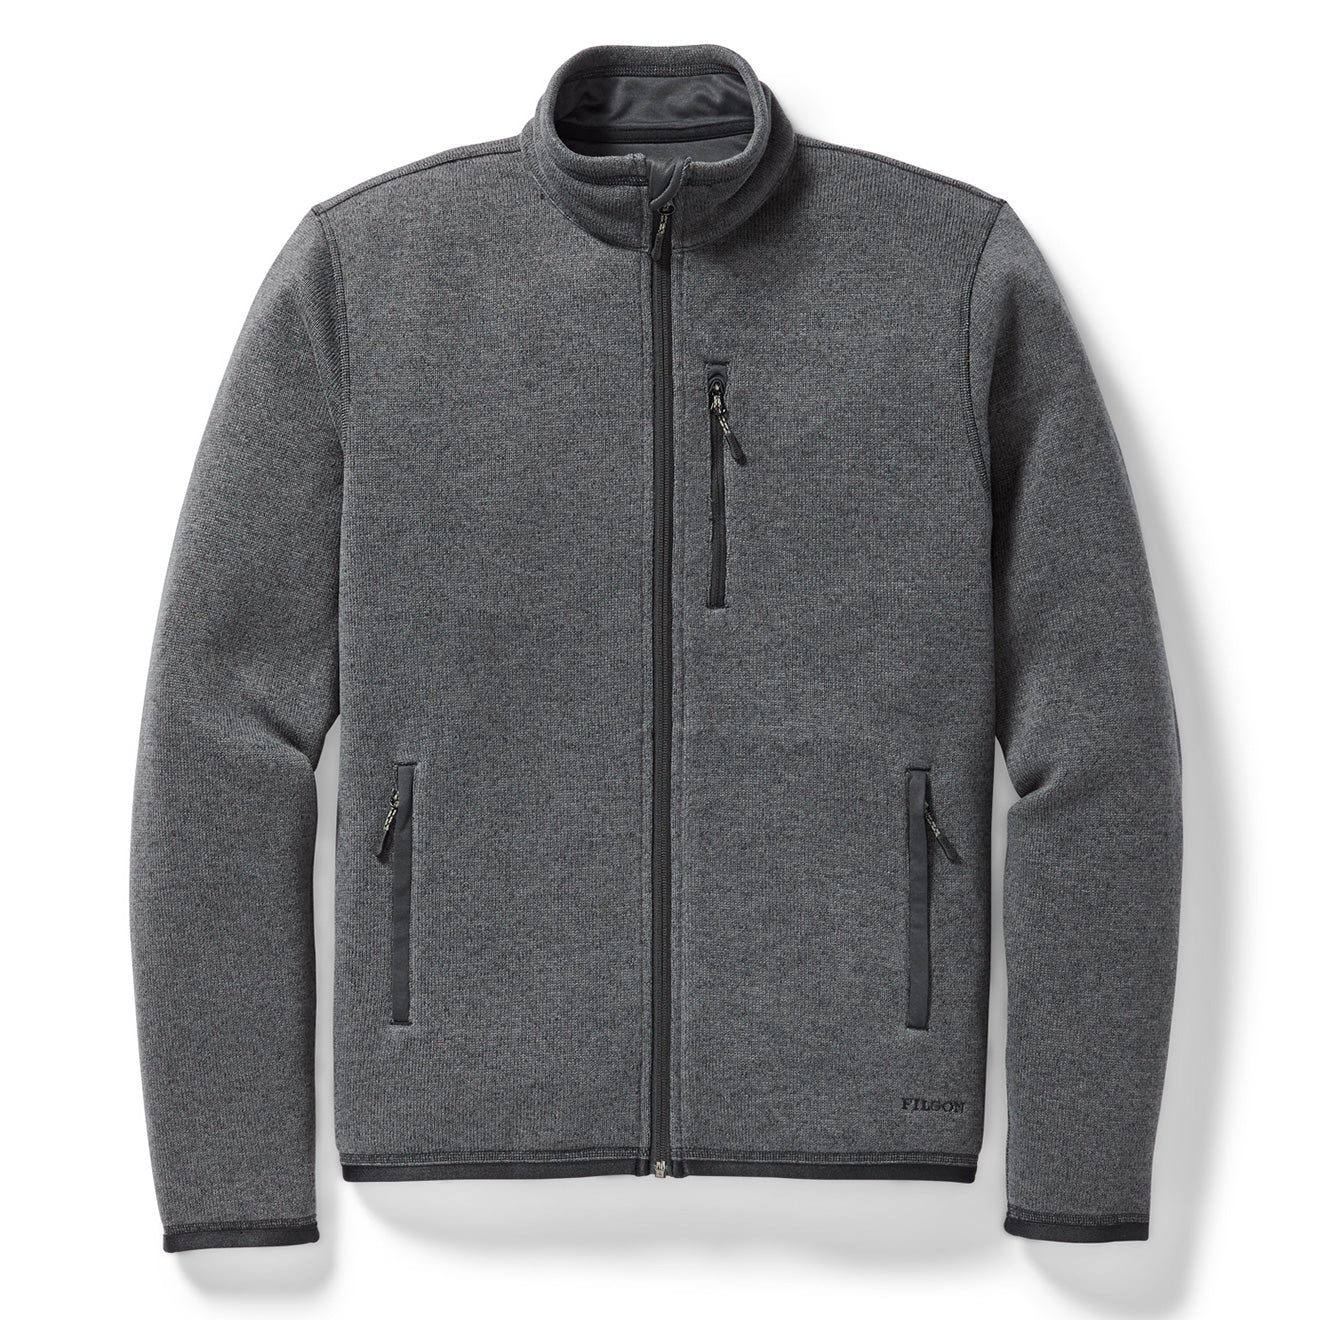 Filson Ridgeway Fleece Jacket Charcoal Heather - Yards Store Menswear